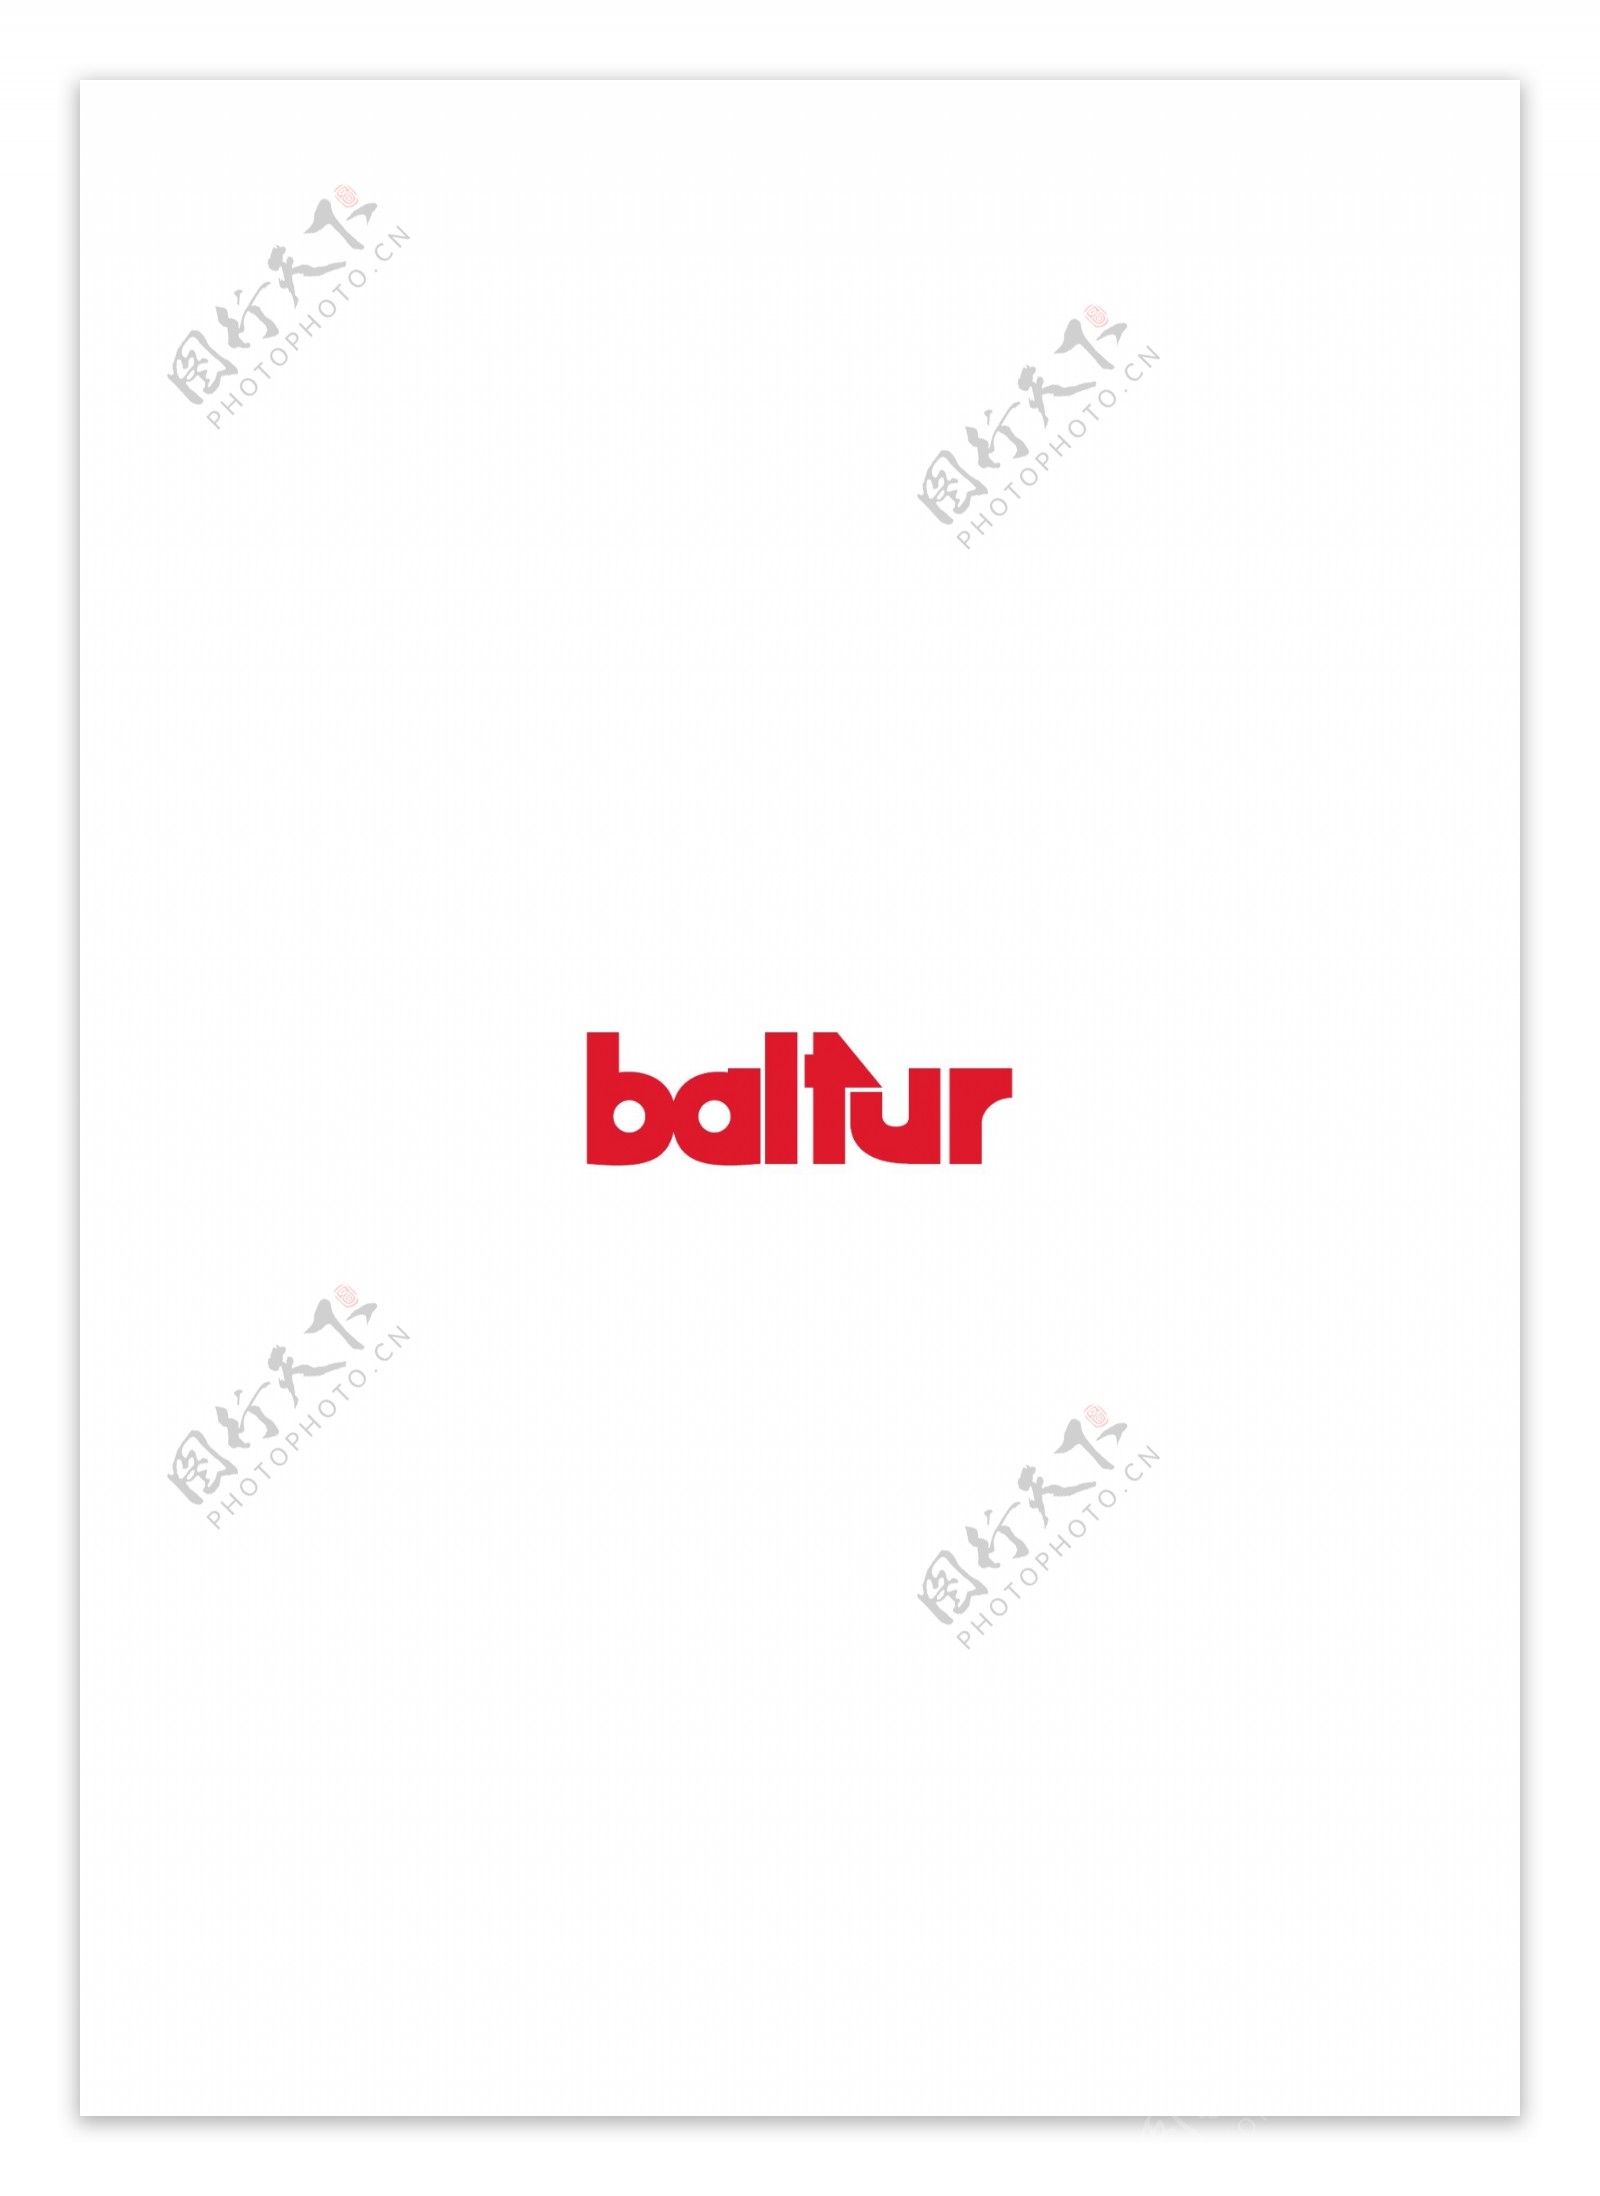 Balturlogo设计欣赏Baltur制造业标志下载标志设计欣赏